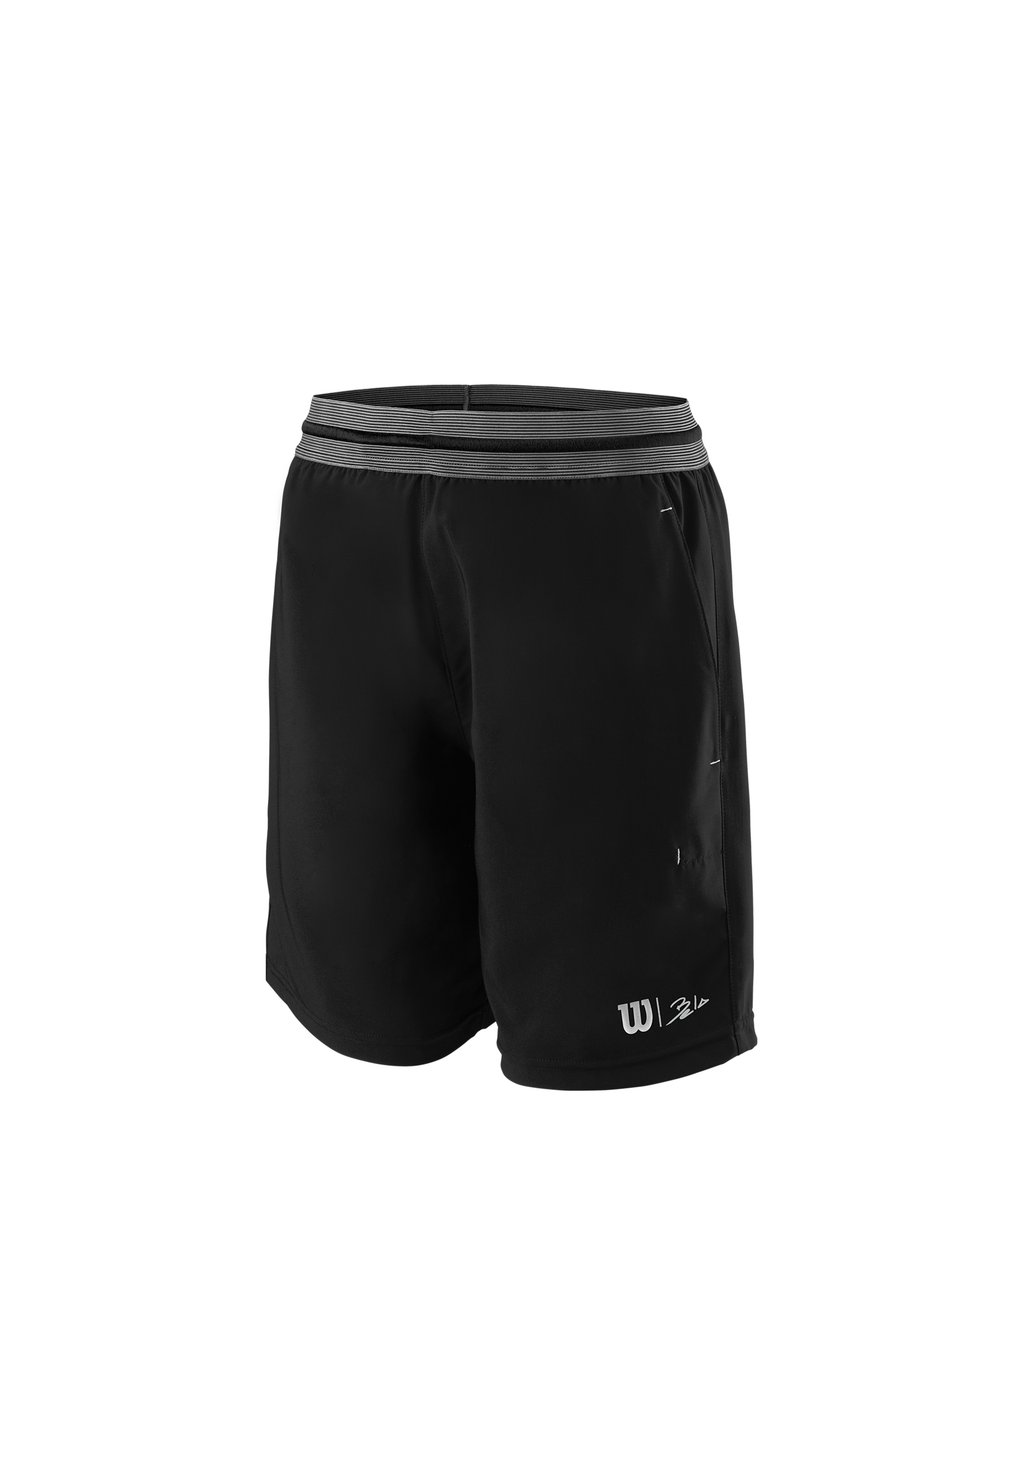 Короткие спортивные брюки WILSON BELA 7 II, цвет schwarz grau